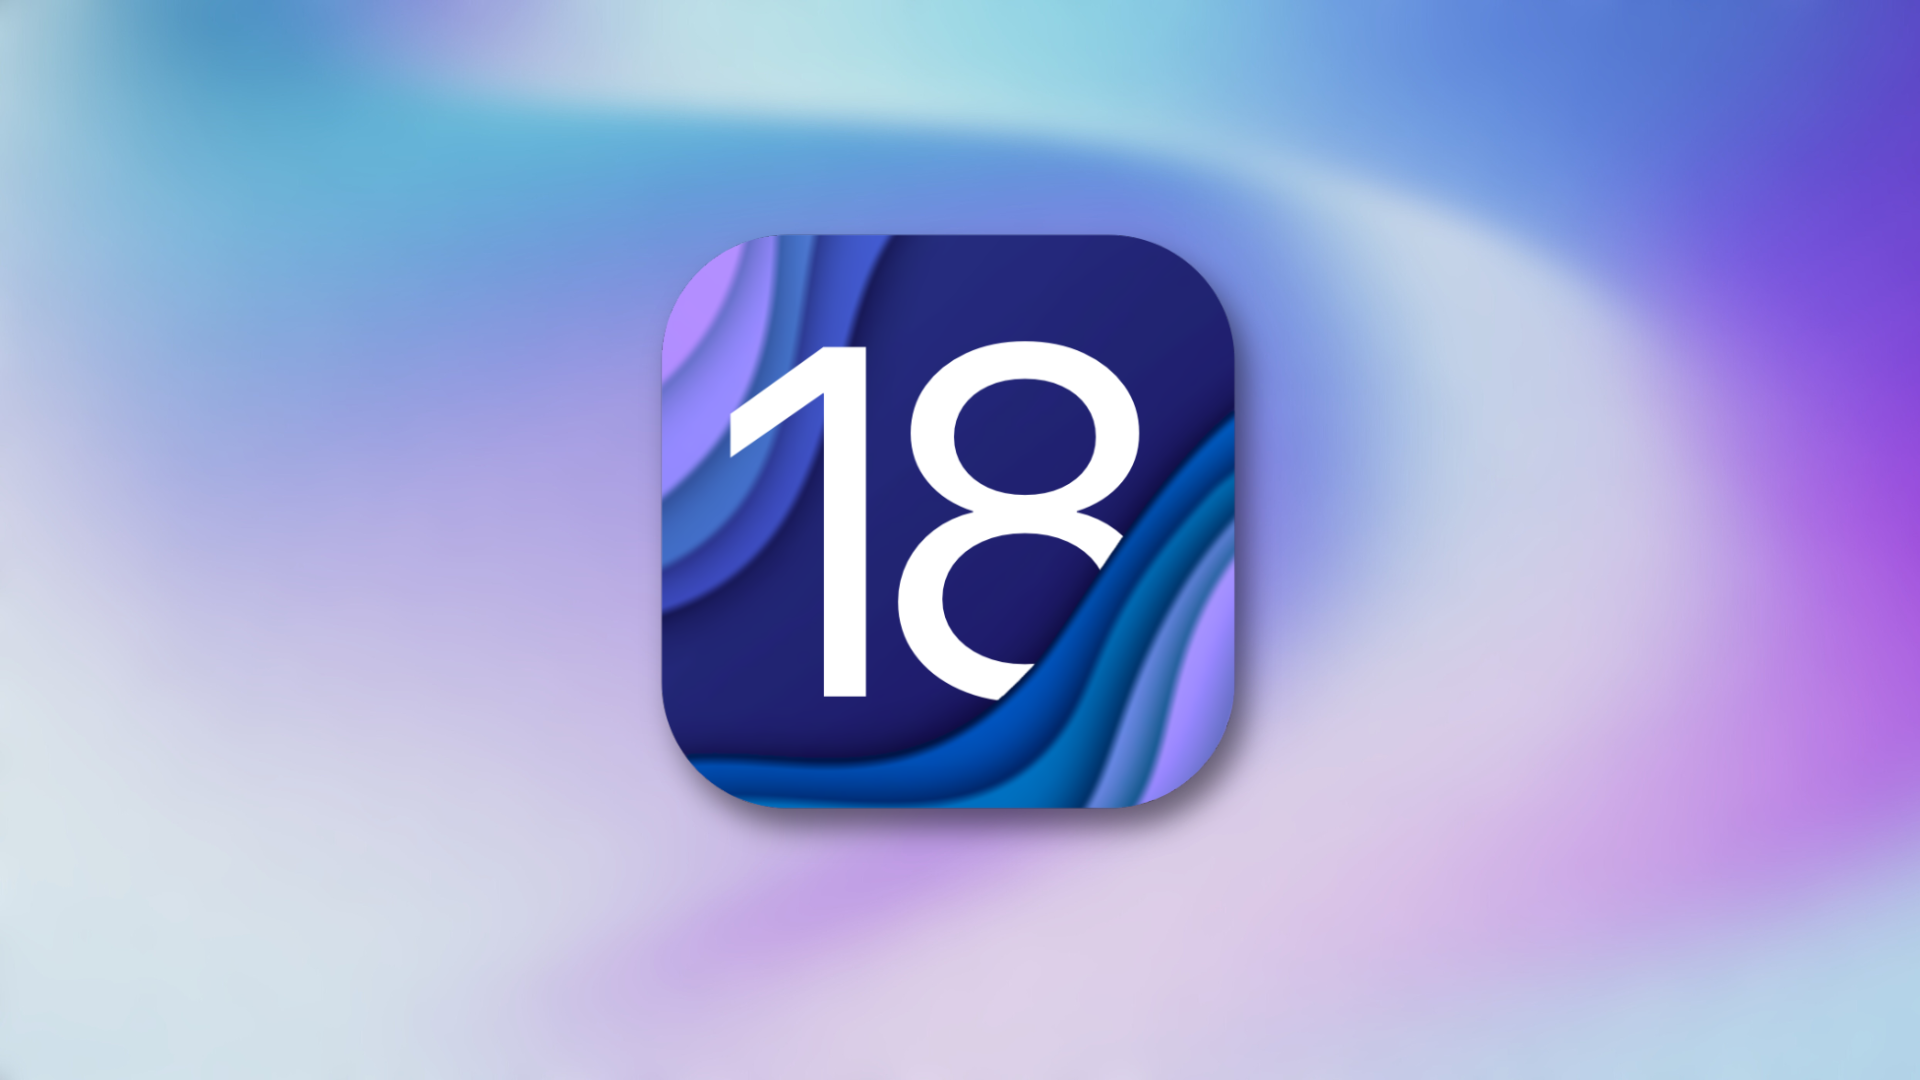 iOS 18-ն ավելի շատ ազատություն է տալիս ձեր հիմնական էկրանը հարմարեցնելու համար